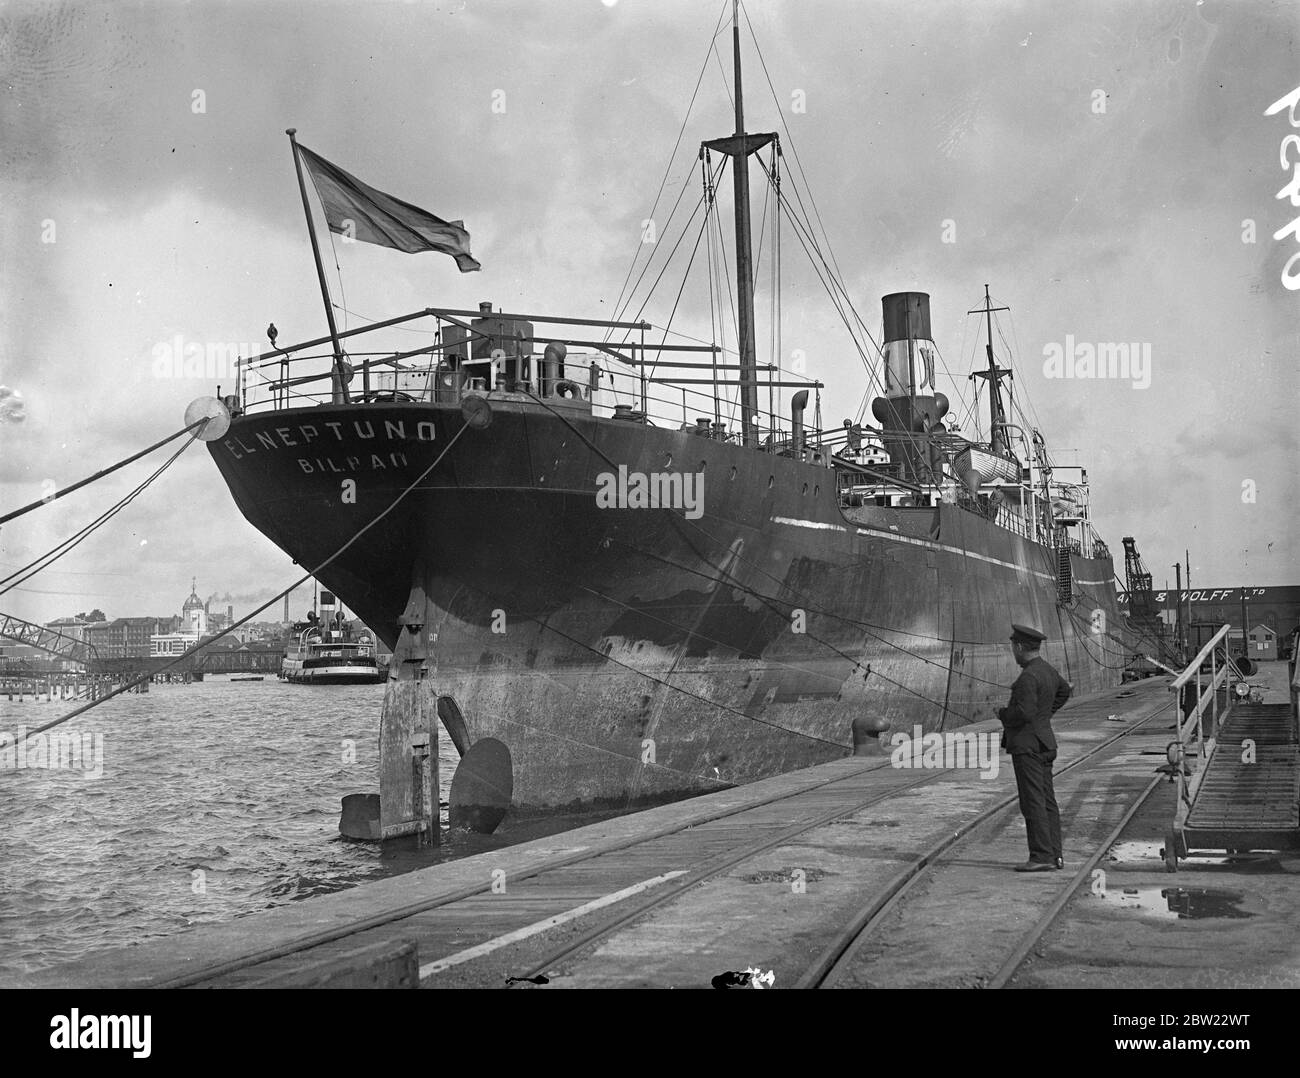 La nave spagnola El Nuptuno, arrivata a Southampton dal fiume Plate con un carico di grano, è stata arrestata su istruzioni dell'ammiragliato Marshall, sebbene non sia stato ancora dato alcun motivo per l'arresto. 18 settembre 1937. Foto Stock